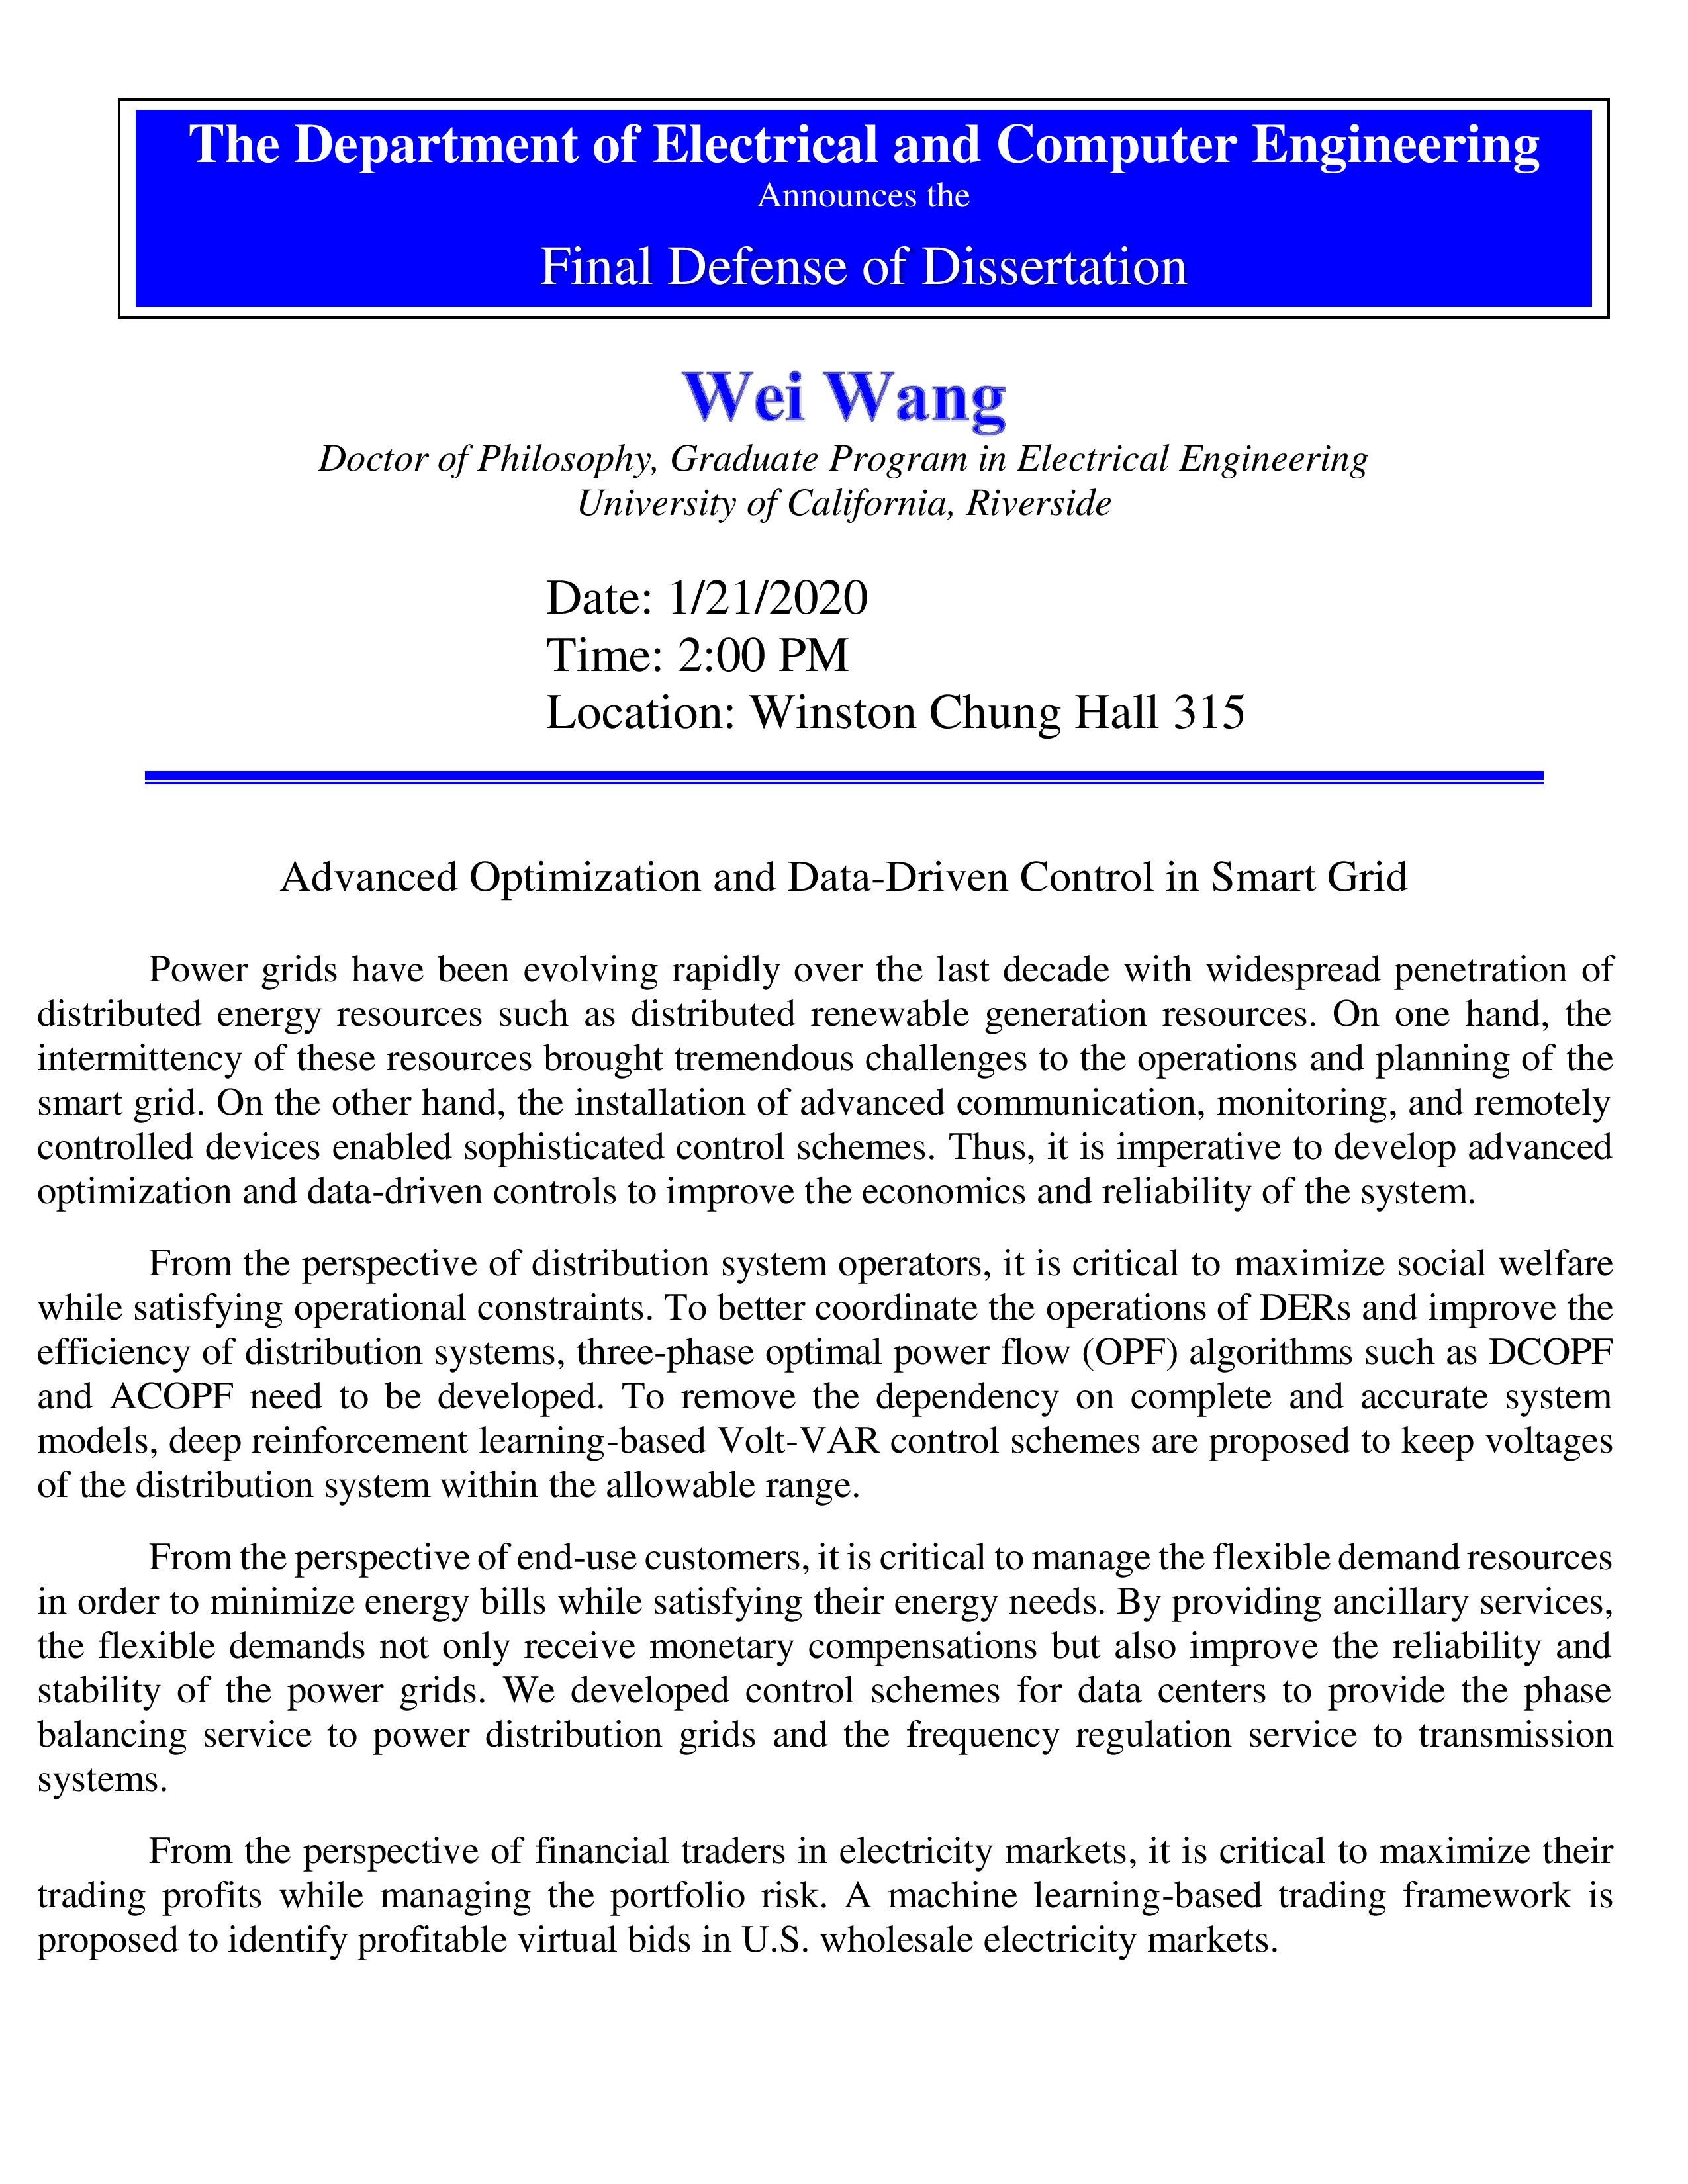 WANG, Wei Dissertation Defense Flyer